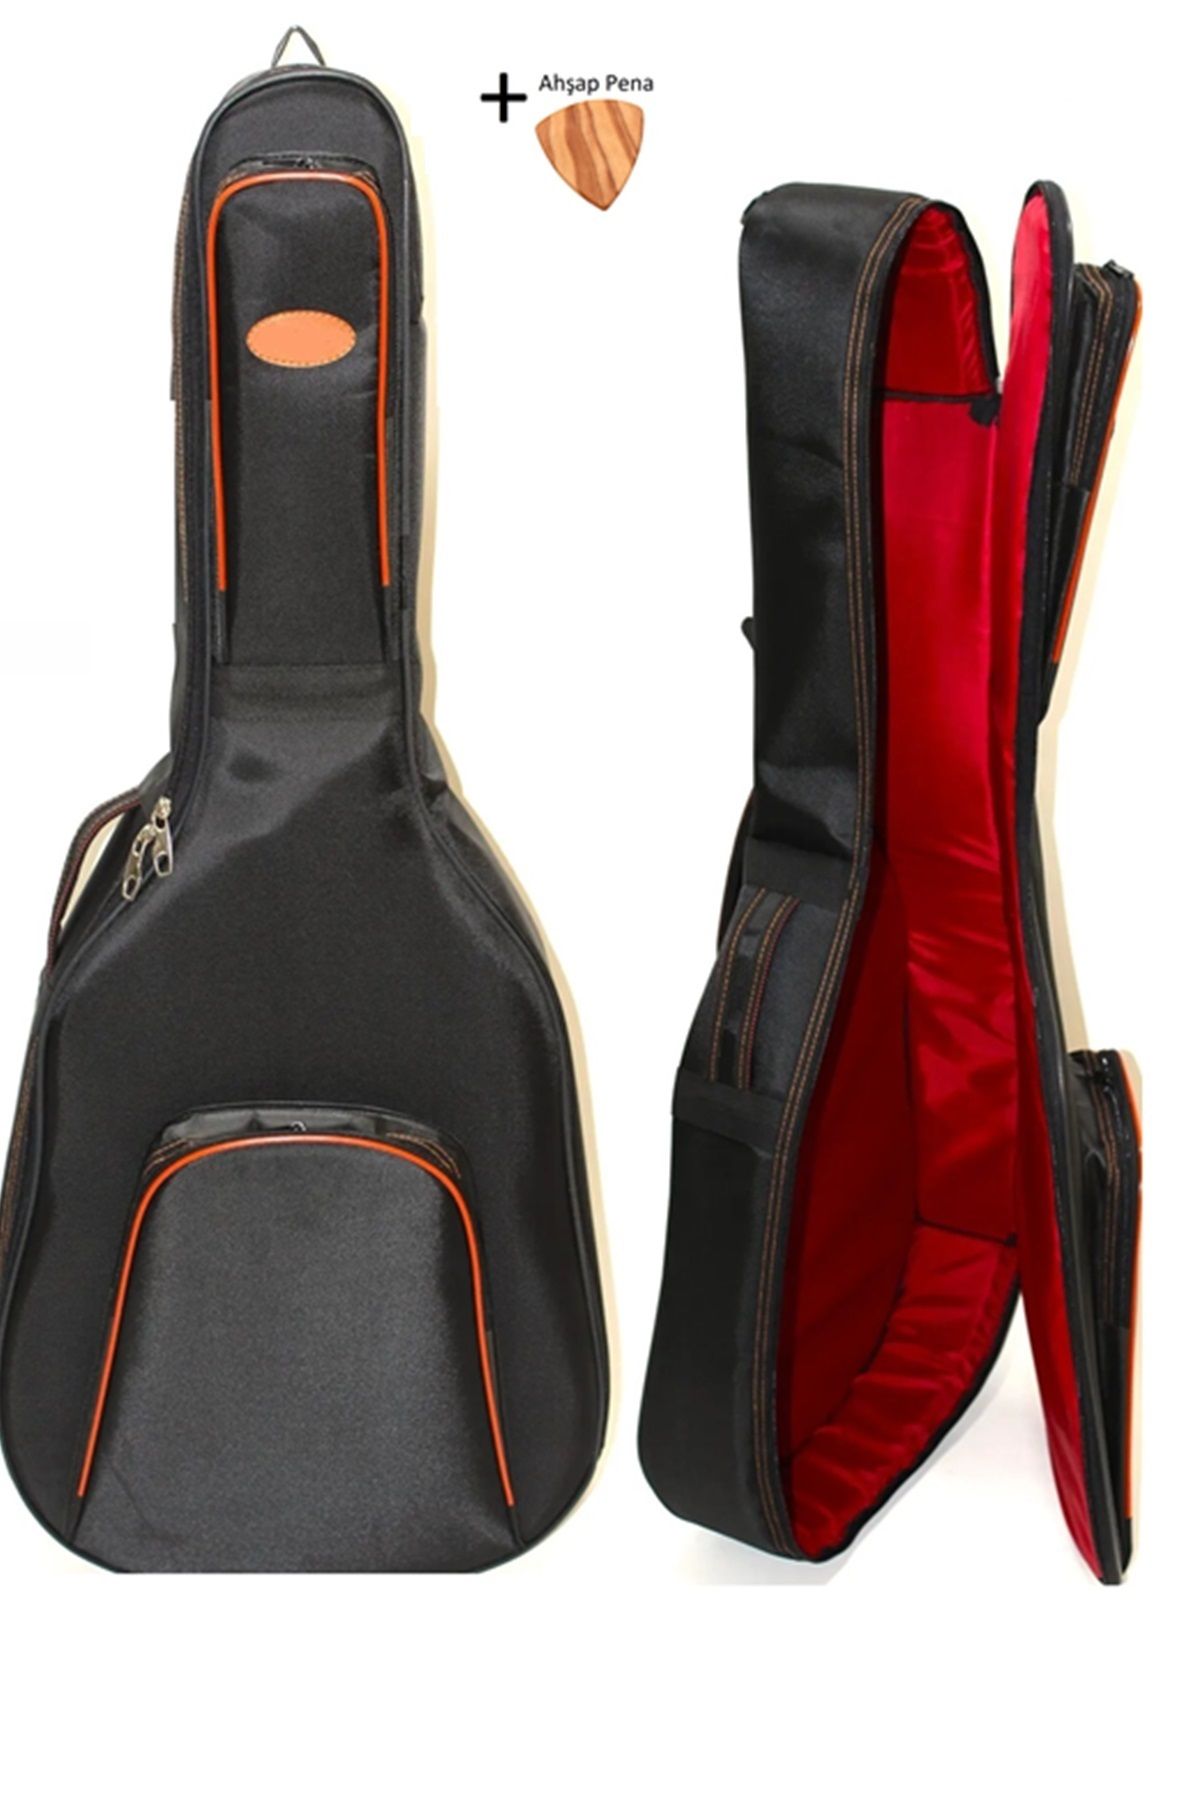 Donizetti Ultra Yüksek Koruma Midex Klasik Gitar Kılıfı Taşıma Çantası Gigbag Soft Case - Cg-395bk